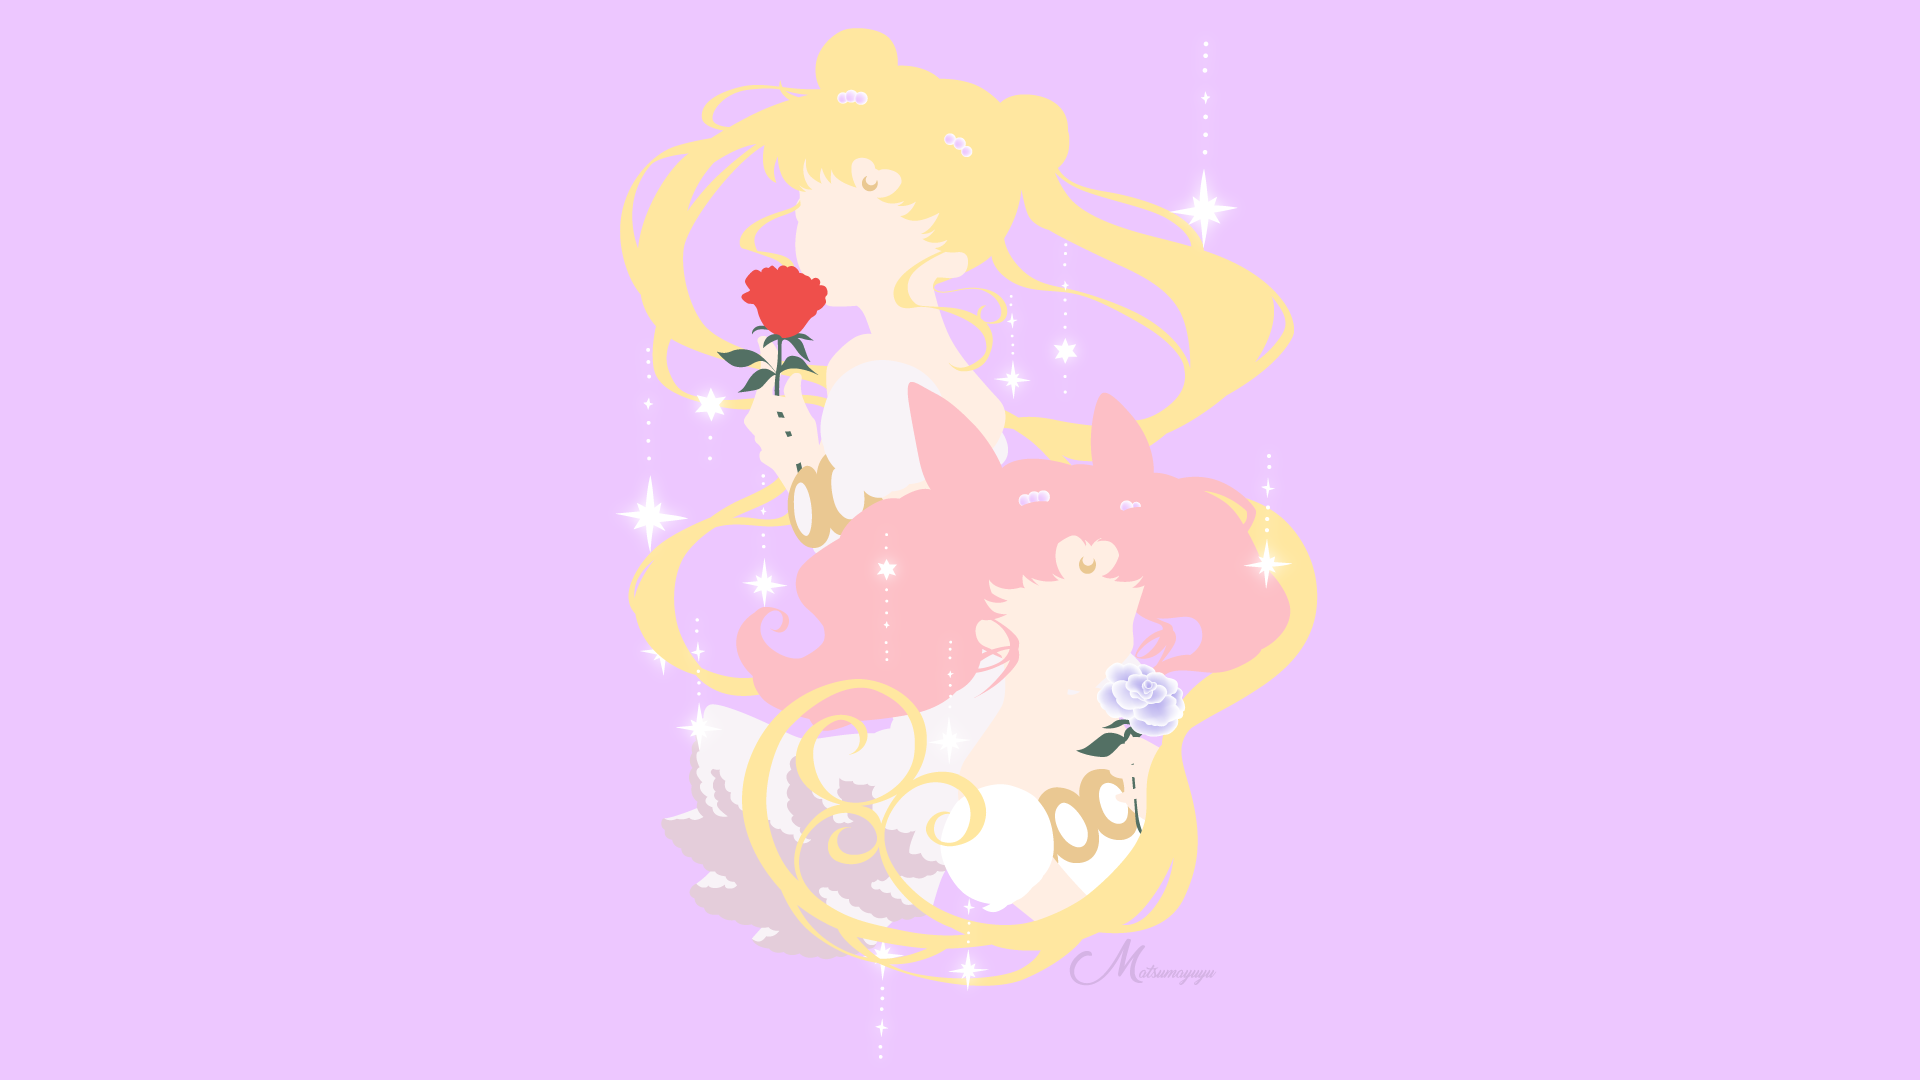 Обои мун. Sailor Moon фон. Усаги Цукино и Чибиуса. Сейлор Мун обои на ноутбук.